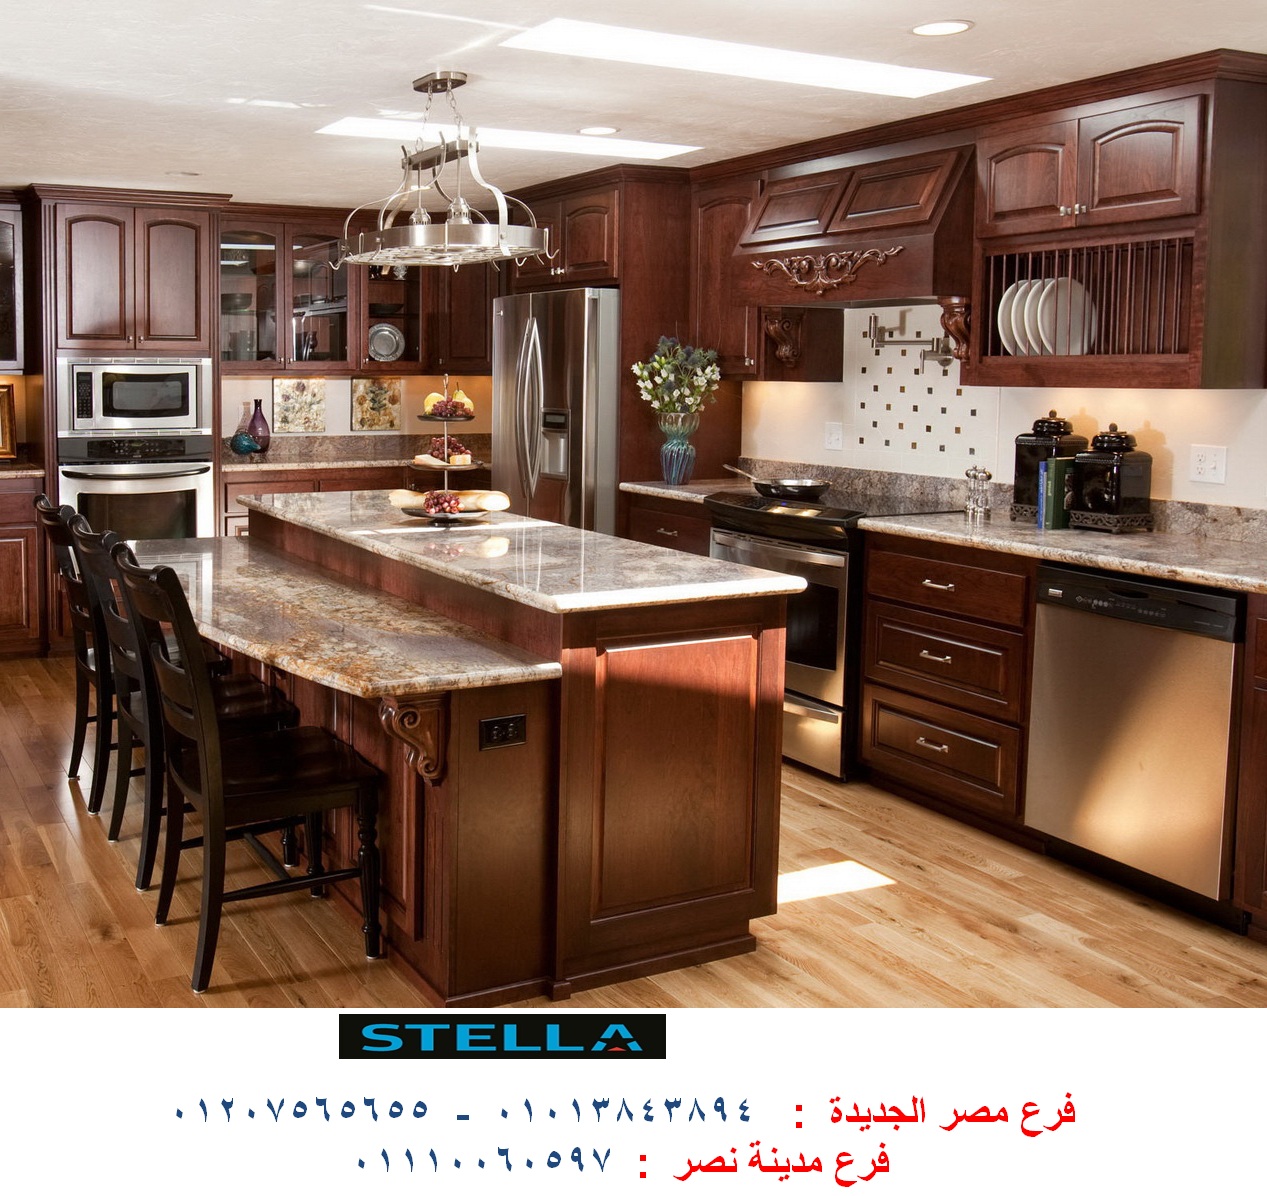 سعر مطبخ الاكريلك ٢٠١٨ – افضل سعر مطابخ        01207565655 P_820nu0zy3